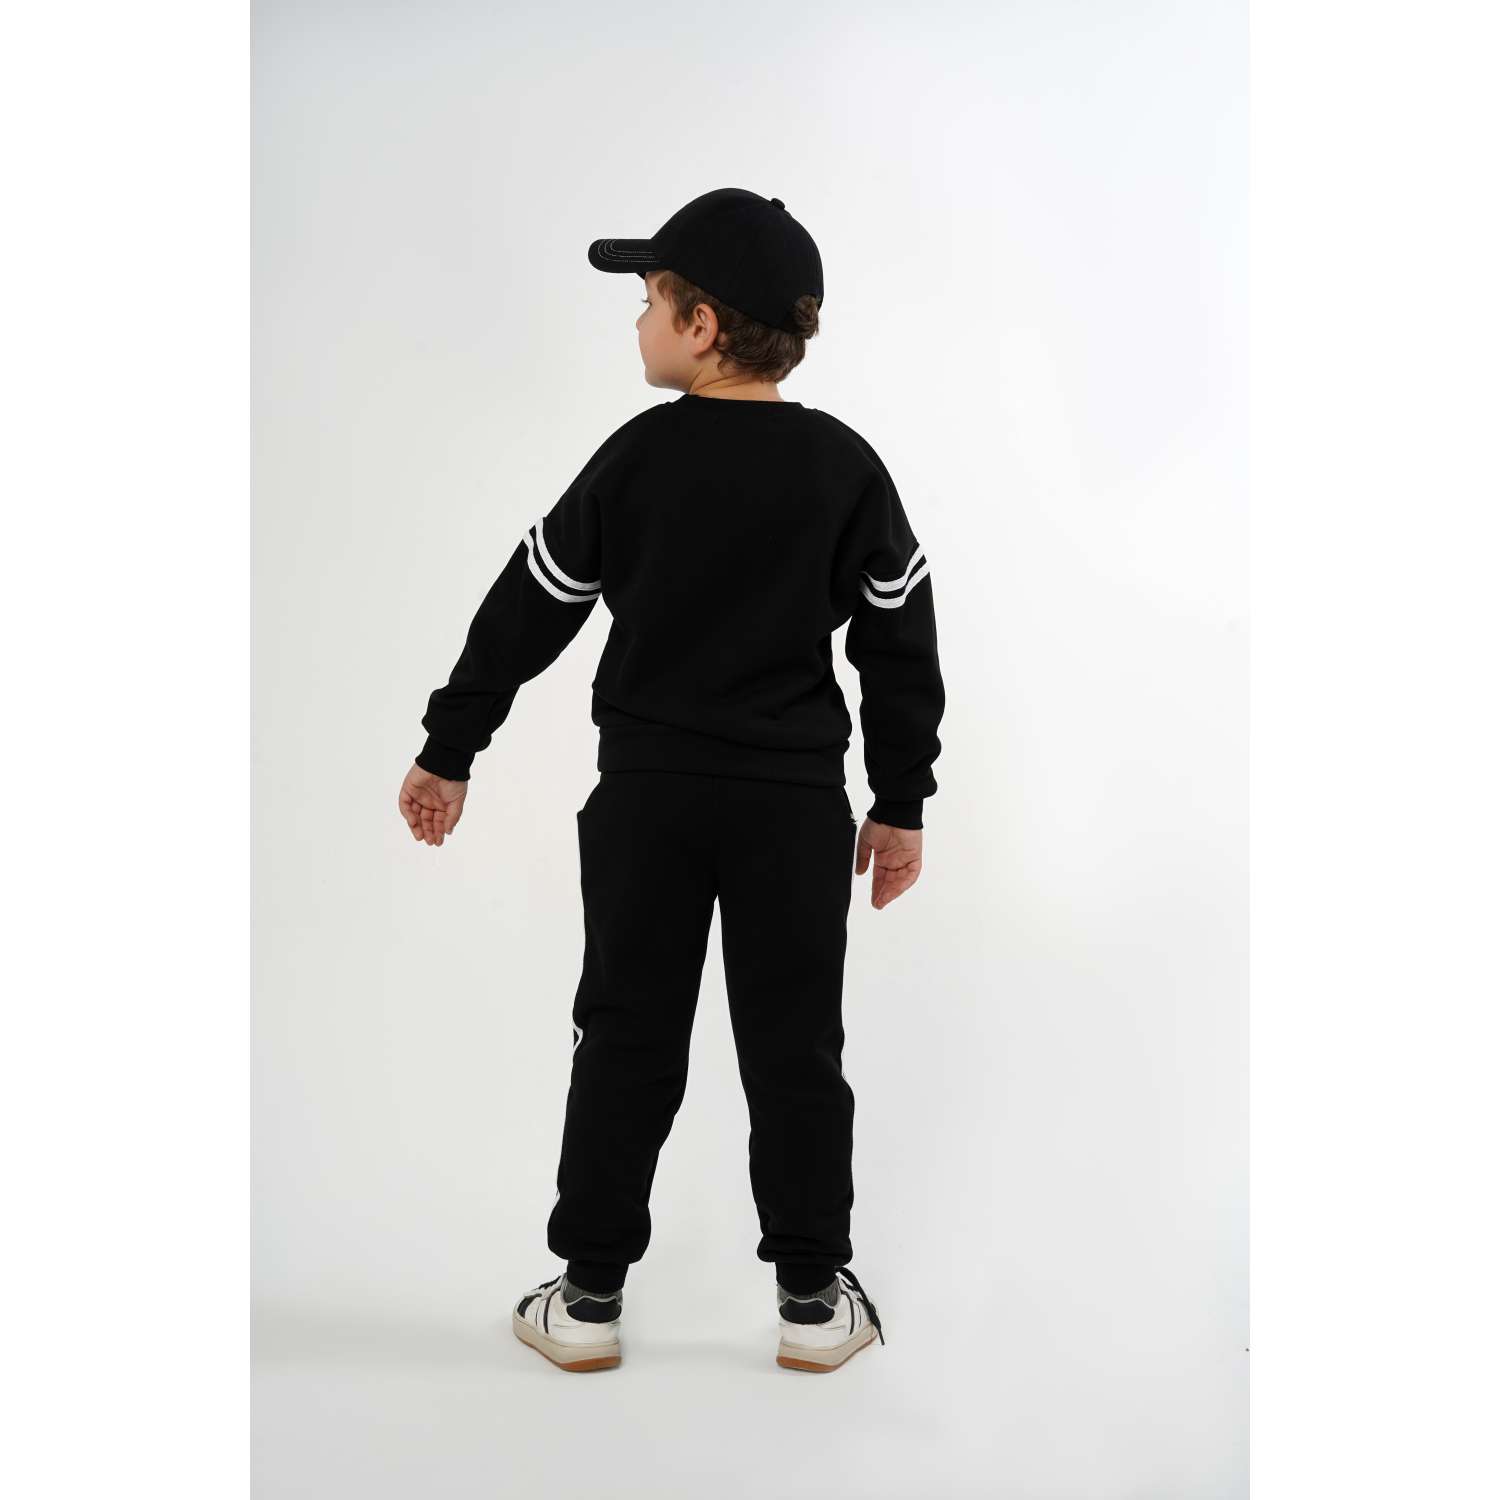 Спортивный костюм BabyDreams KS10/черный костюм для малыша - фото 4